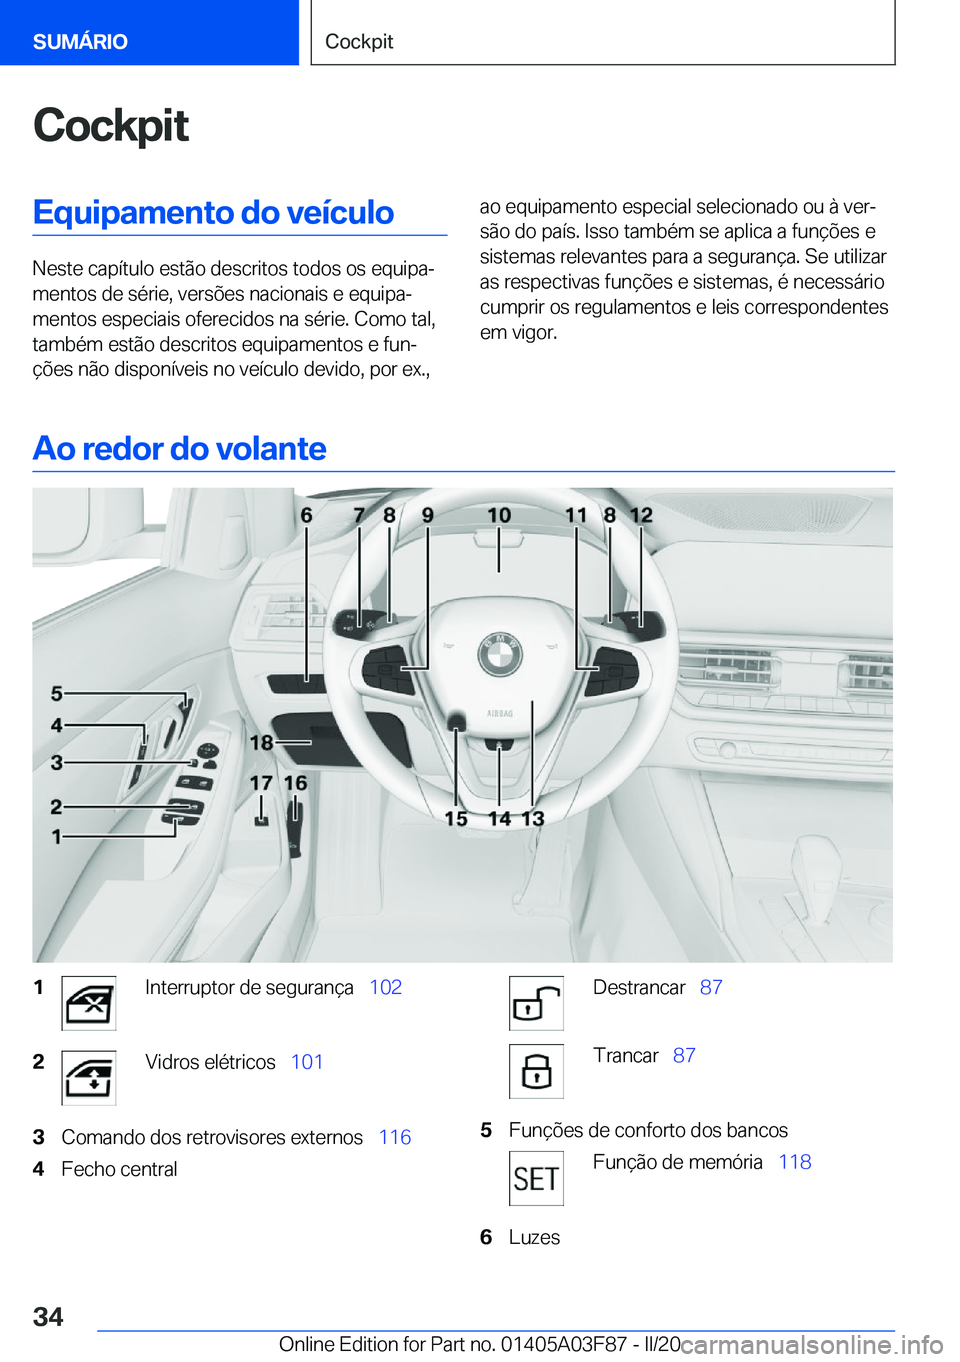 BMW 3 SERIES 2020  Manual do condutor (in Portuguese) �C�o�c�k�p�i�t�E�q�u�i�p�a�m�e�n�t�o��d�o��v�e�